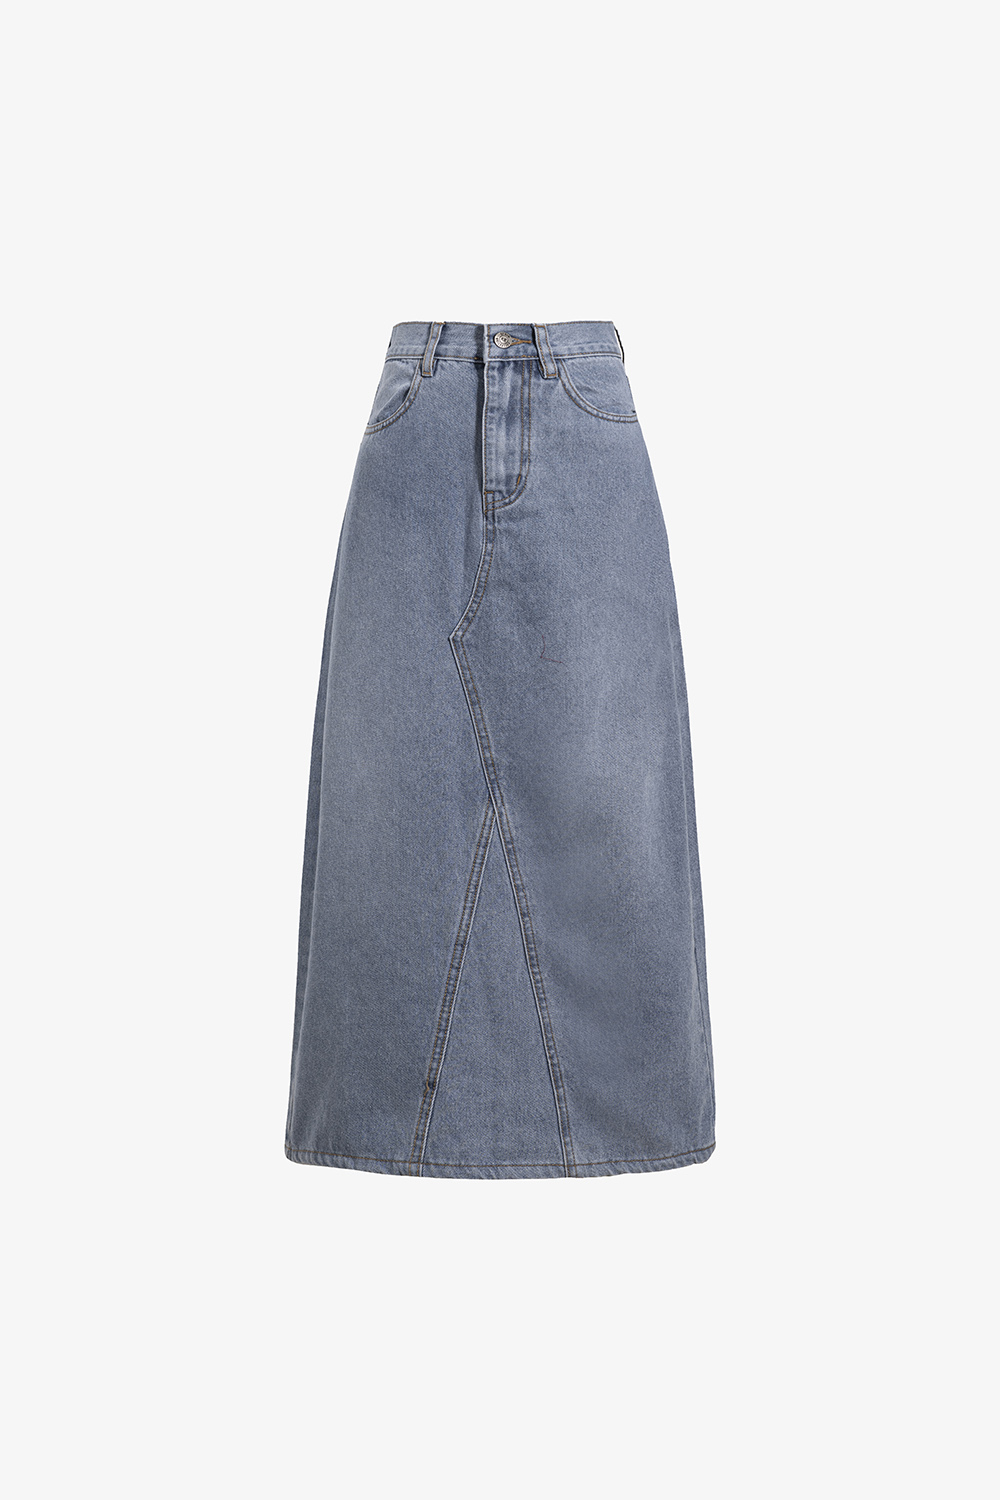 Chân Váy Jeans Ngắn Y2K – CV01